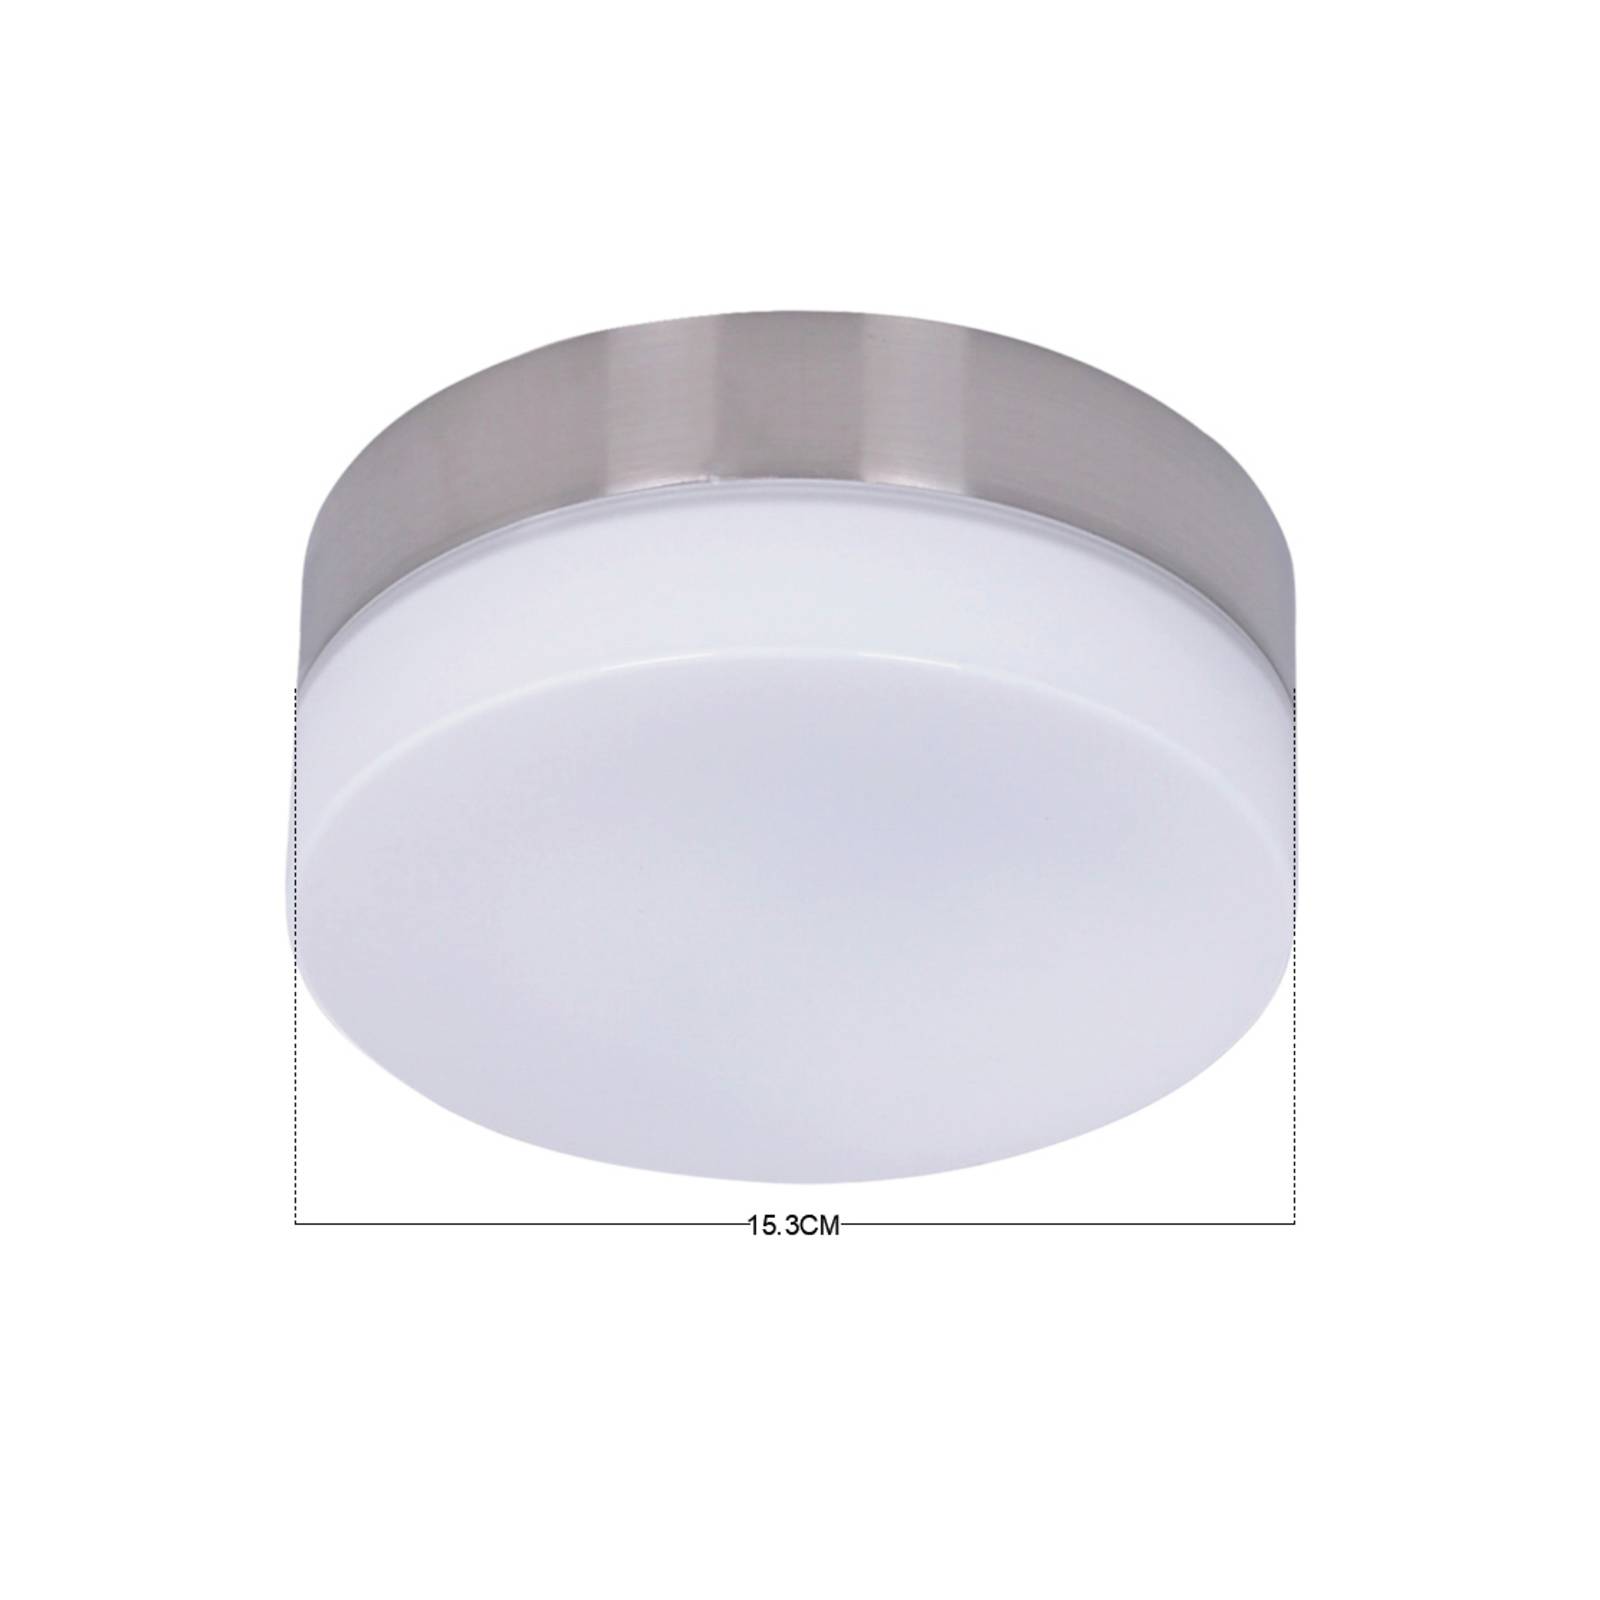 Beacon Lighting Sada světelného majáku pro stropní ventilátor, GX53-LED, matný chrom